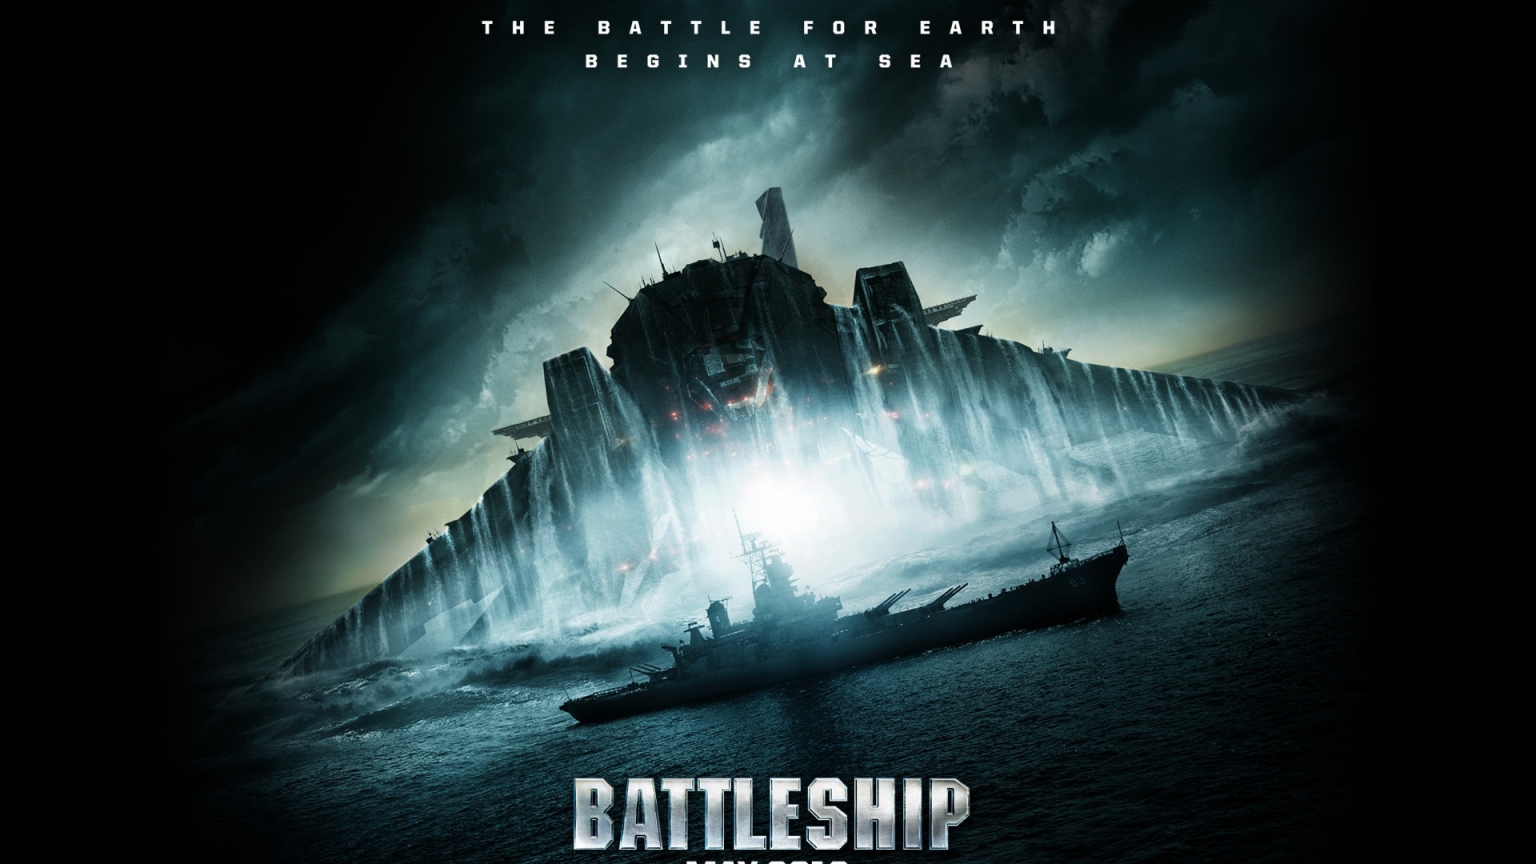 Battleship 2012 for 1536 x 864 HDTV resolution